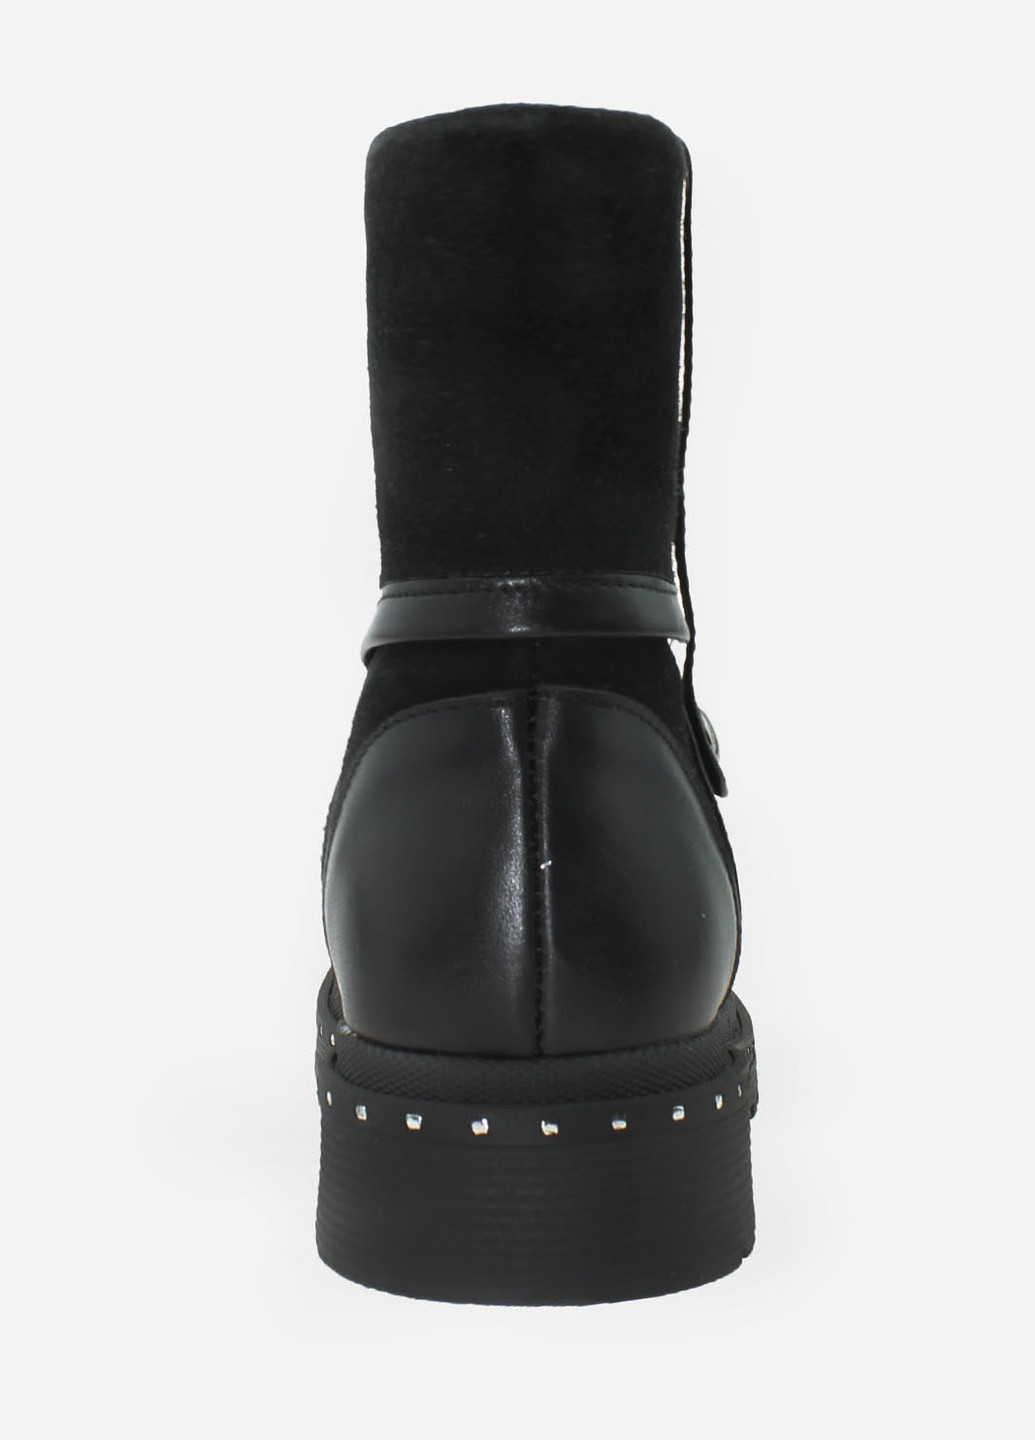 Зимние ботинки rg18-55965 черный Gampr из натуральной замши